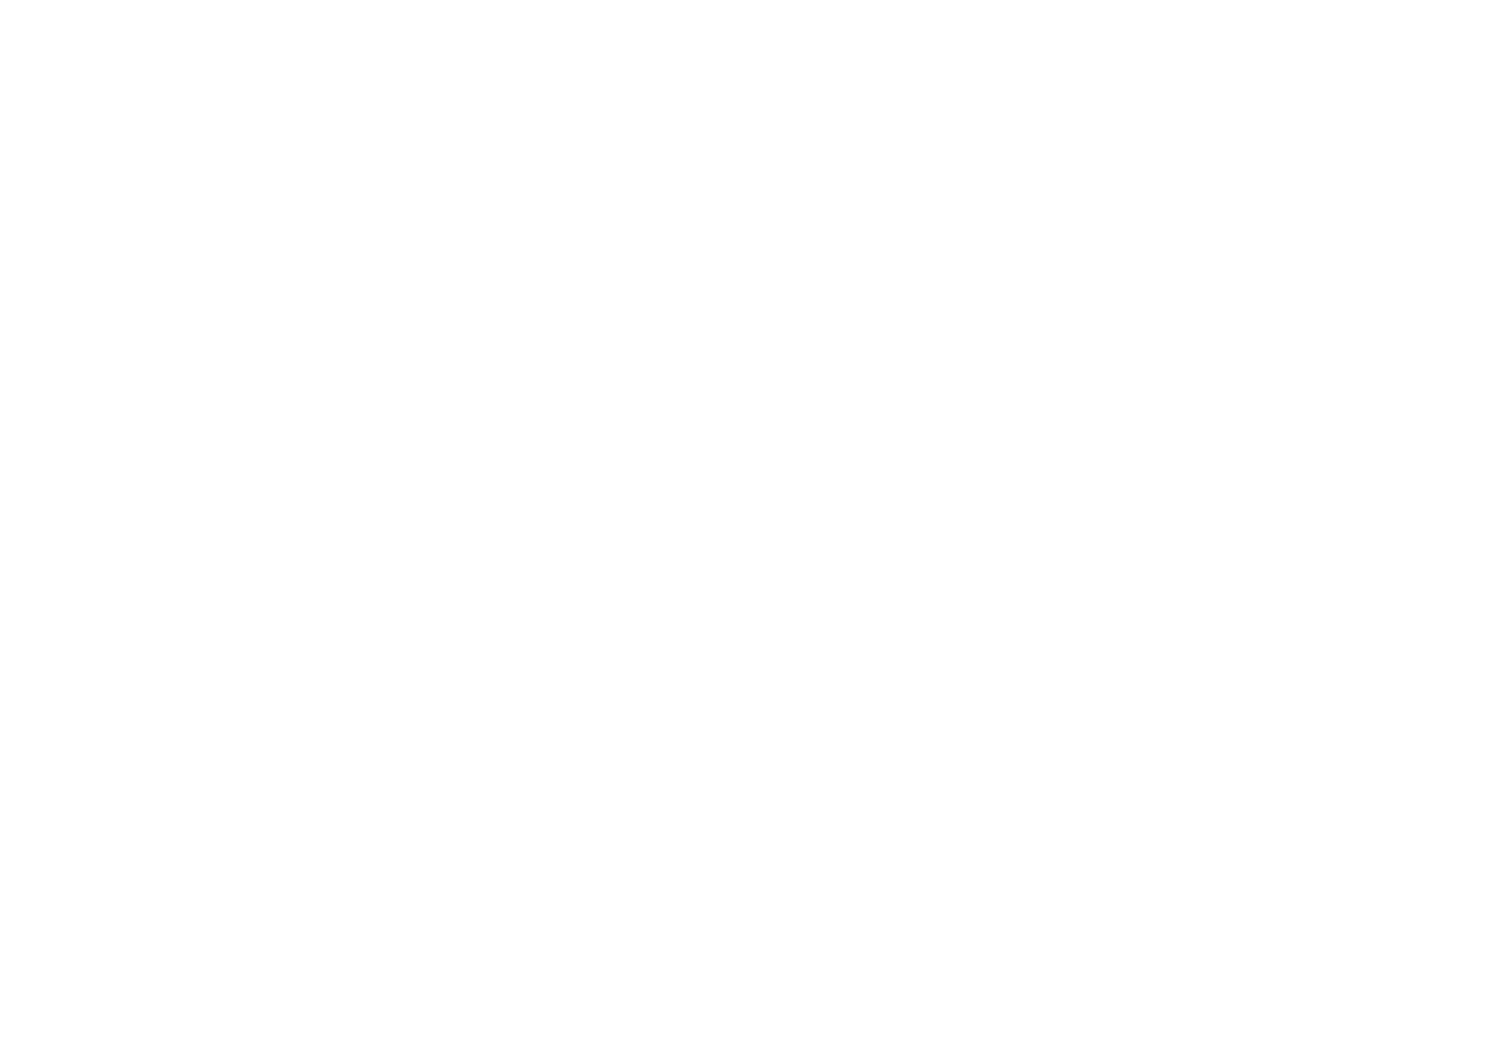 PC & J